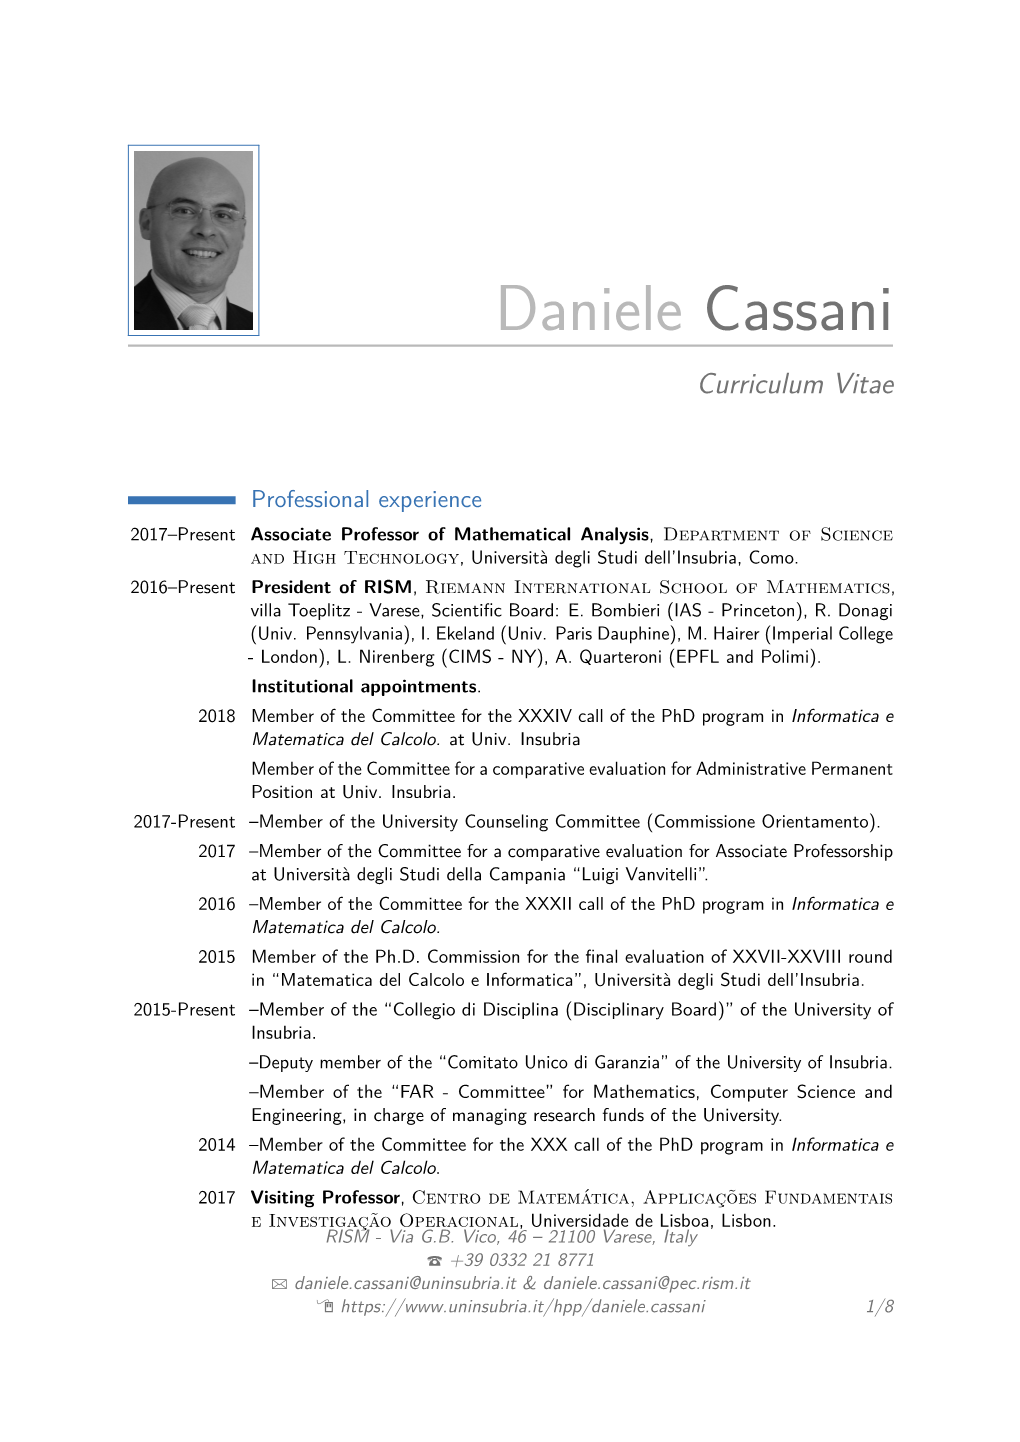 Daniele Cassani Curriculum Vitae